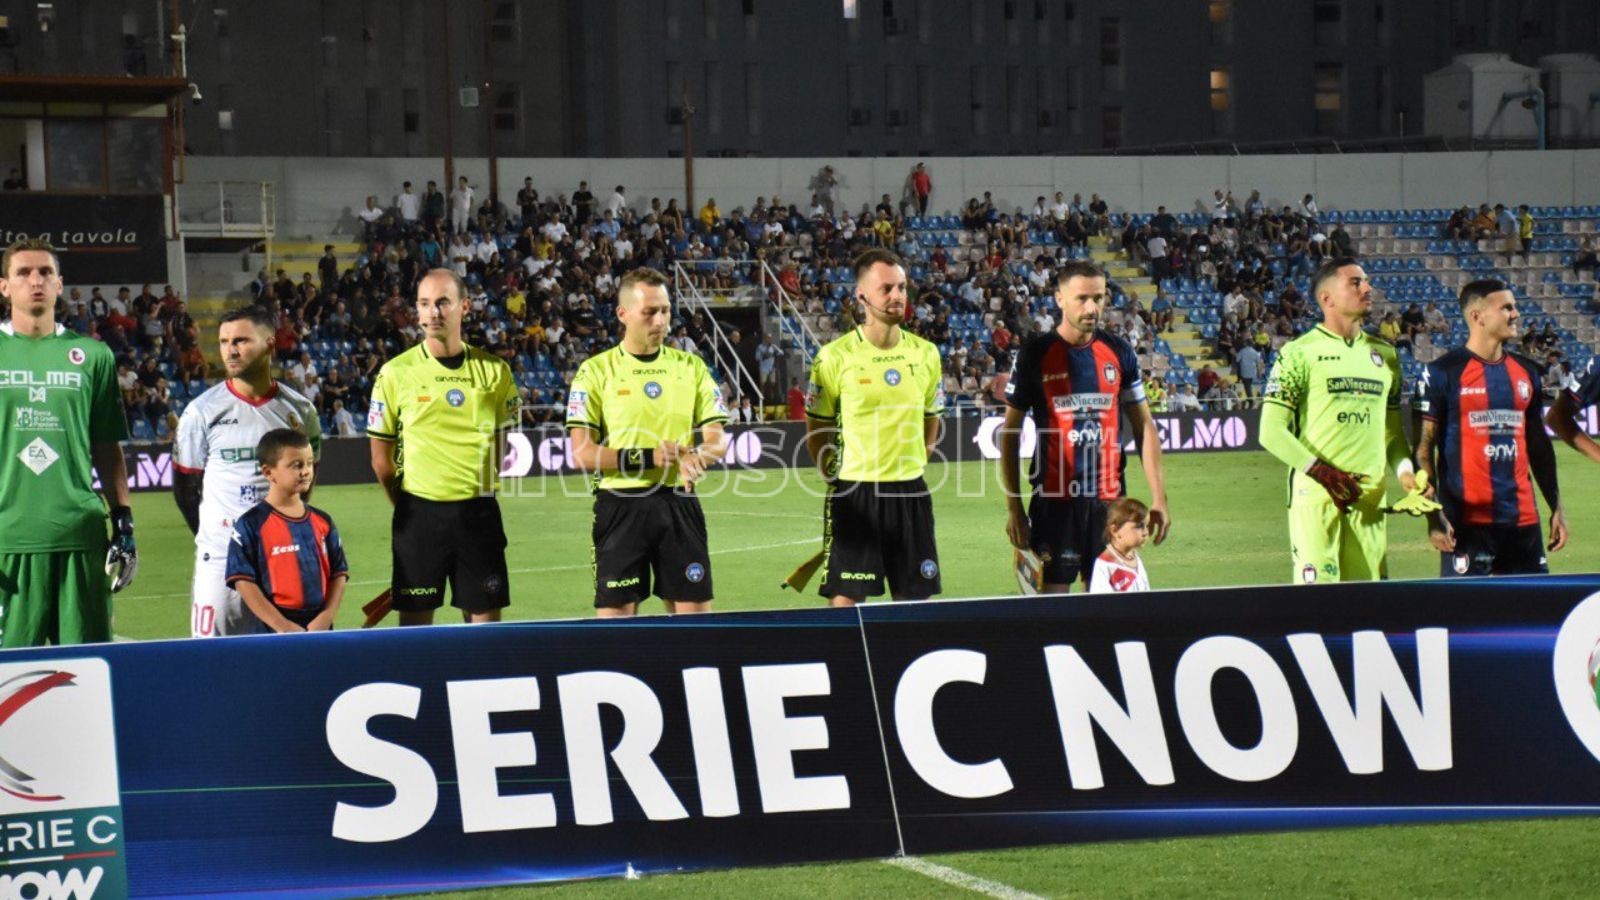 – 2 Giornata – Crotone vs Turris 2-3 – Squadre in campo (Rosito Andrea 10.09.2023)